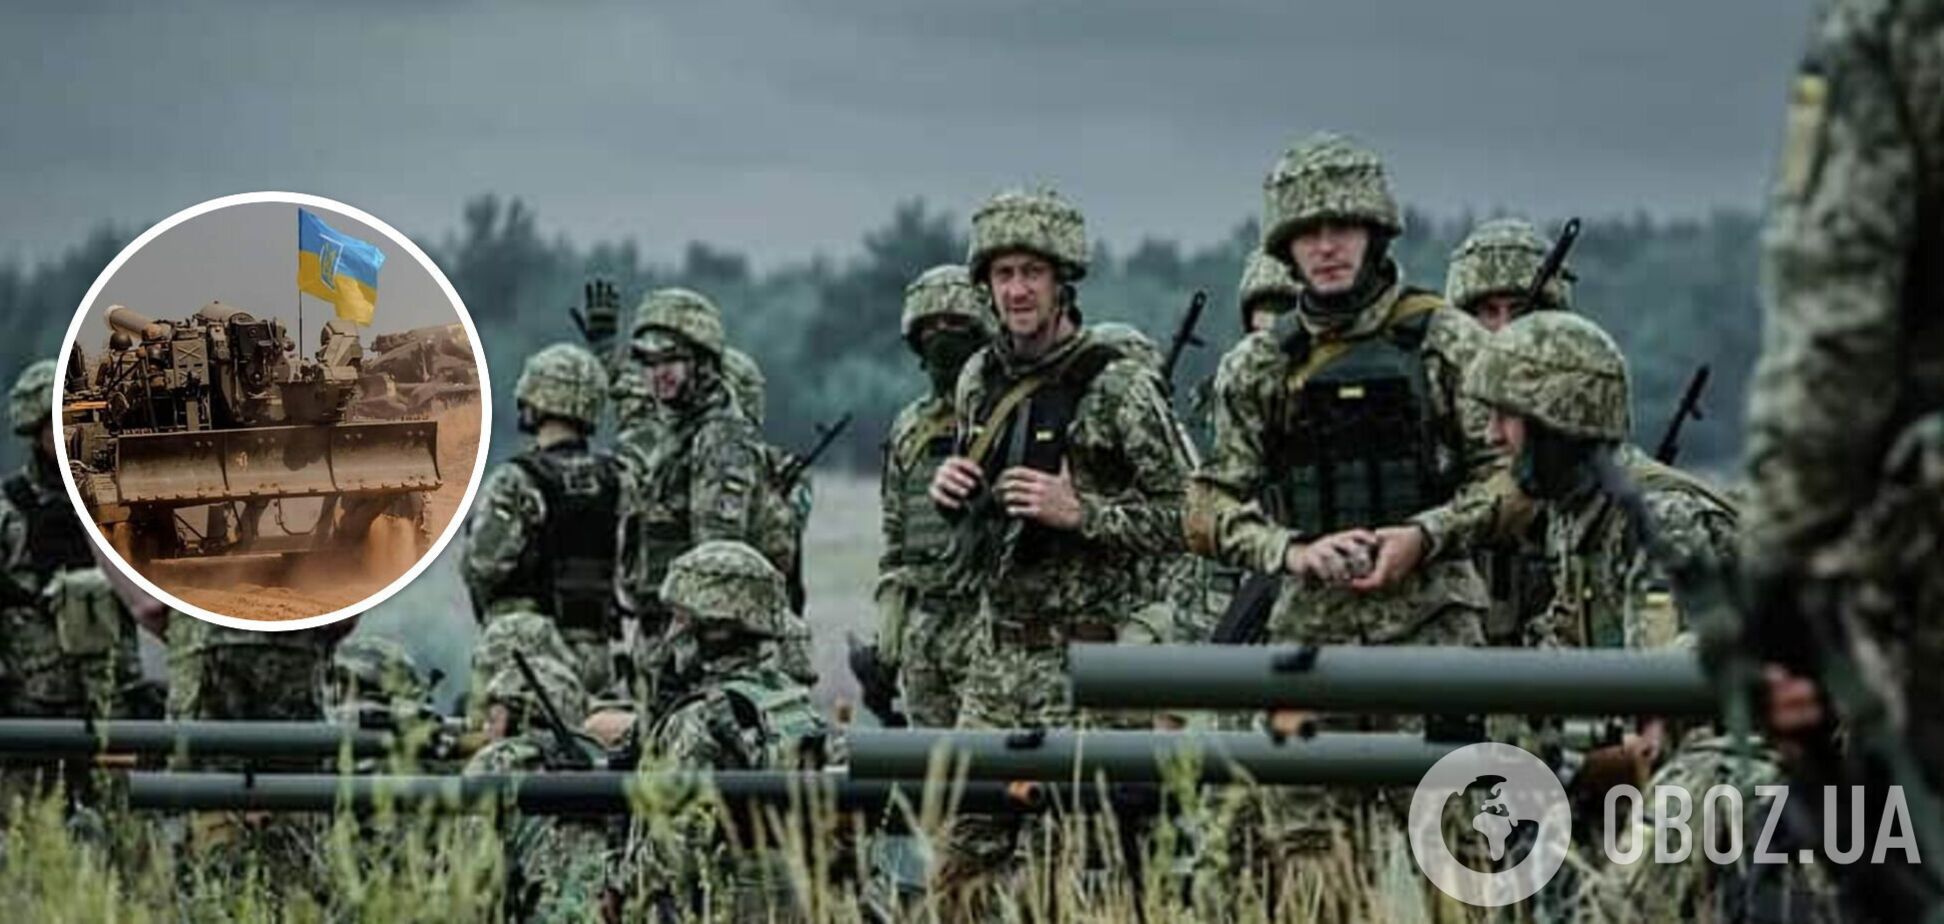 Штурмуя Авдеевку, армия Путина открывает ВСУ новые возможности, – военный эксперт